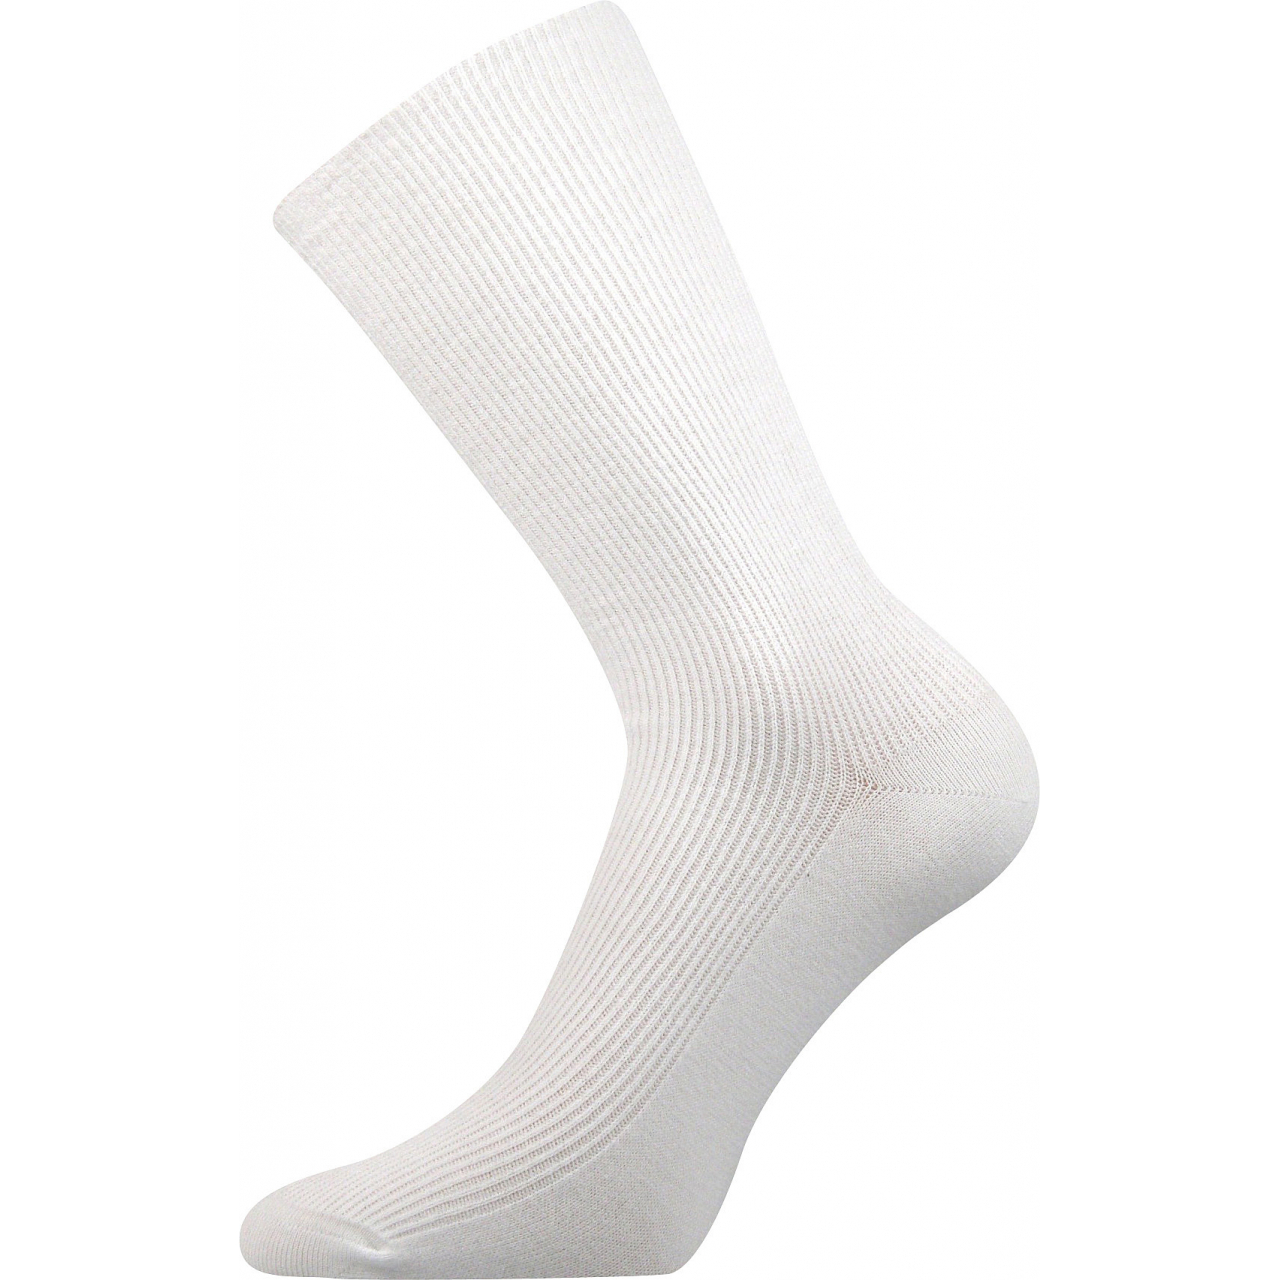 Ponožky speciální unisex Lonka Oregan - bílé, 43-46